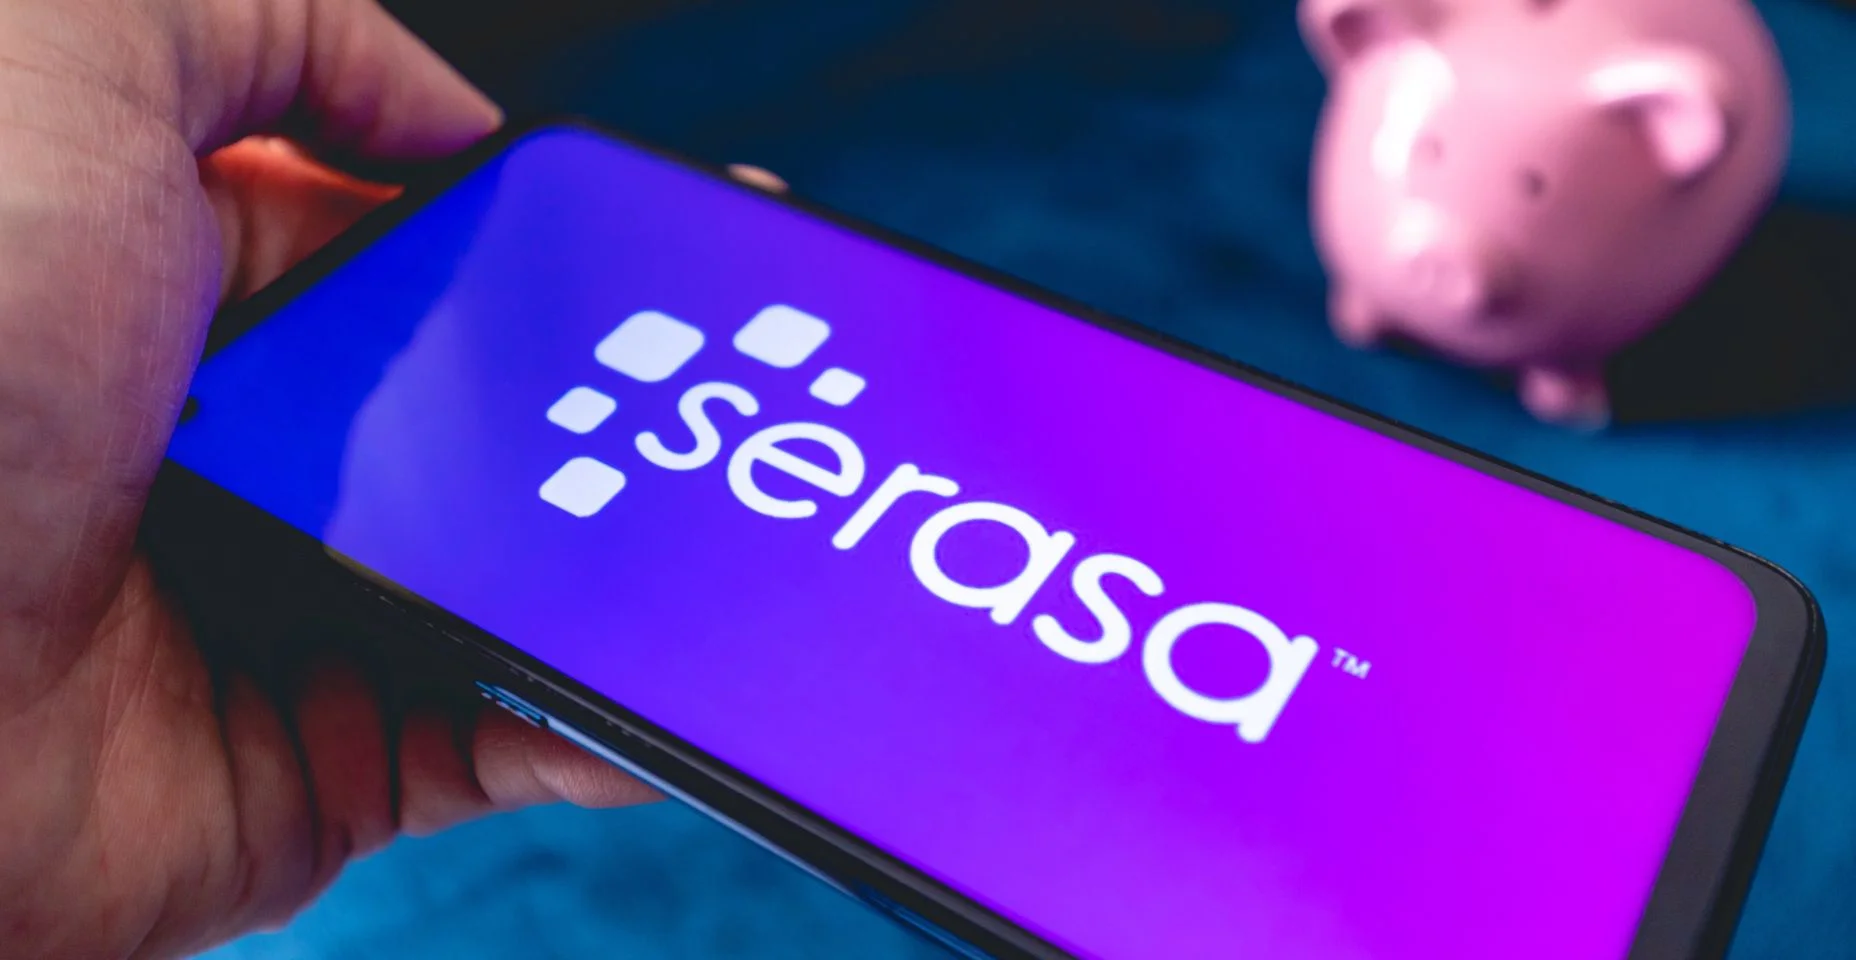 Um homem segurando um telefone celular com a logo da empresa brasileira Serasa. Um cofrinho na composição.